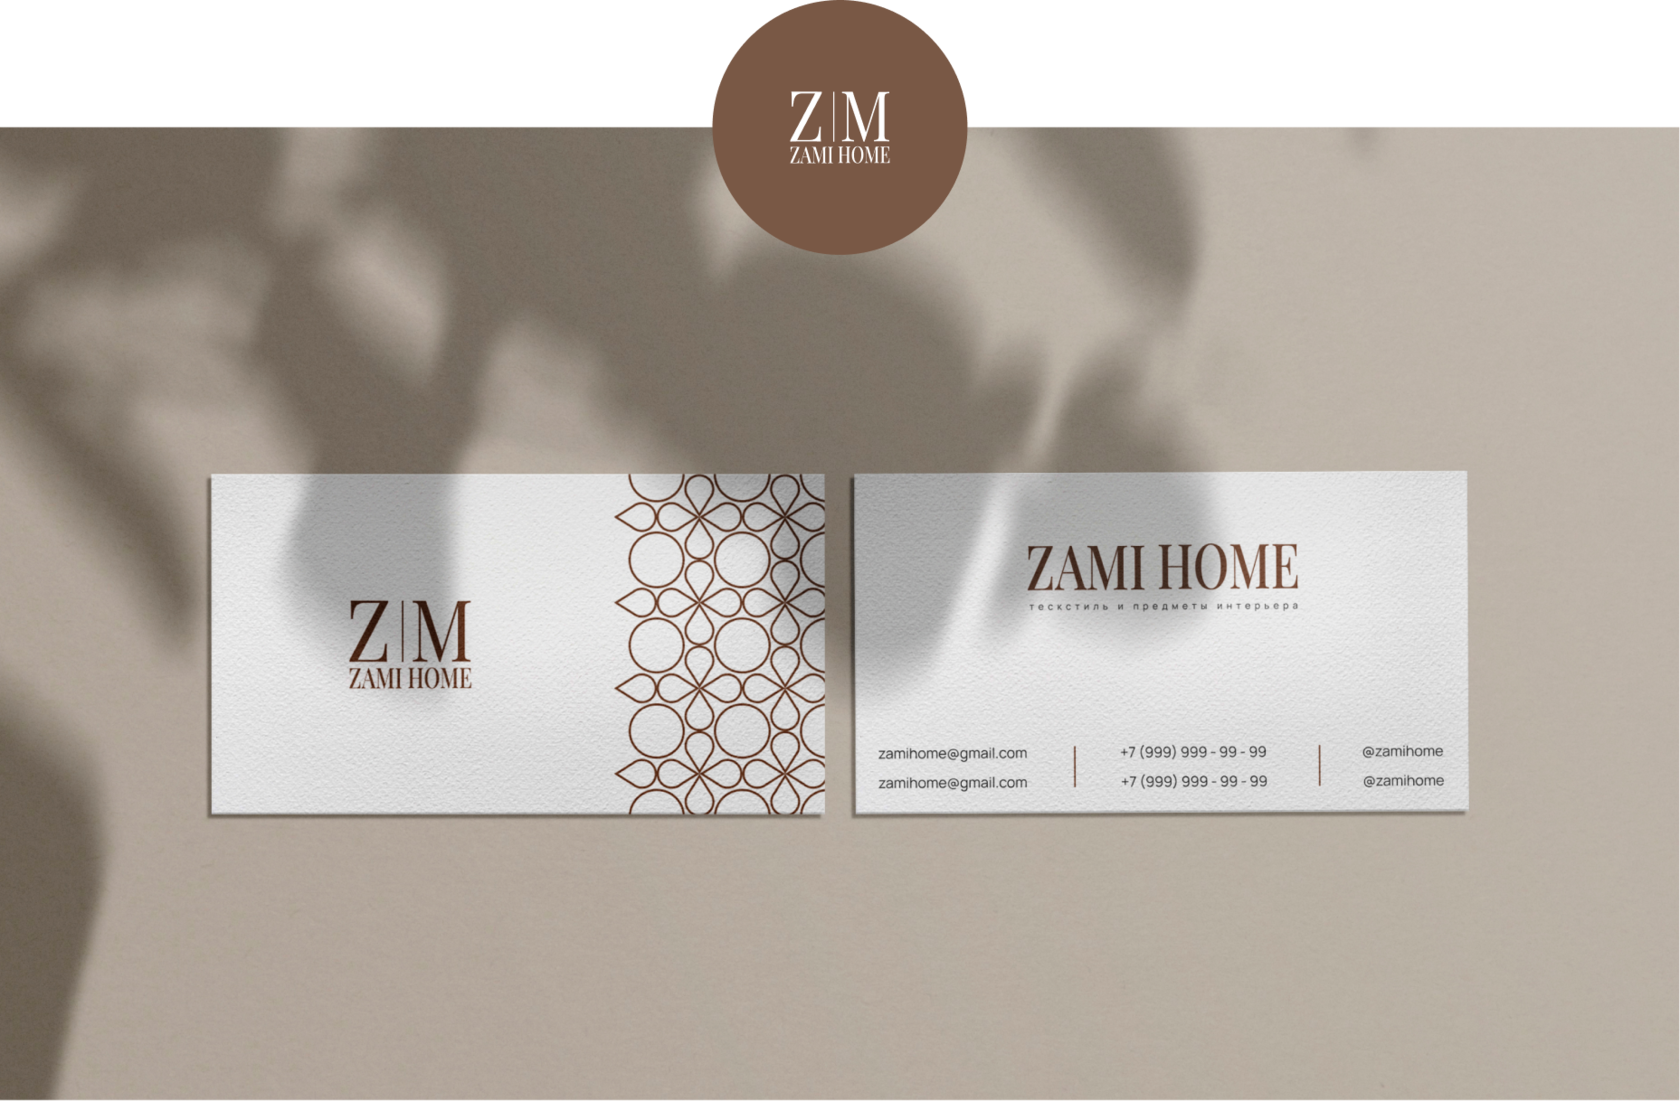 ZAMI HOME — Изображение №10 — Брендинг, Графика на Dprofile